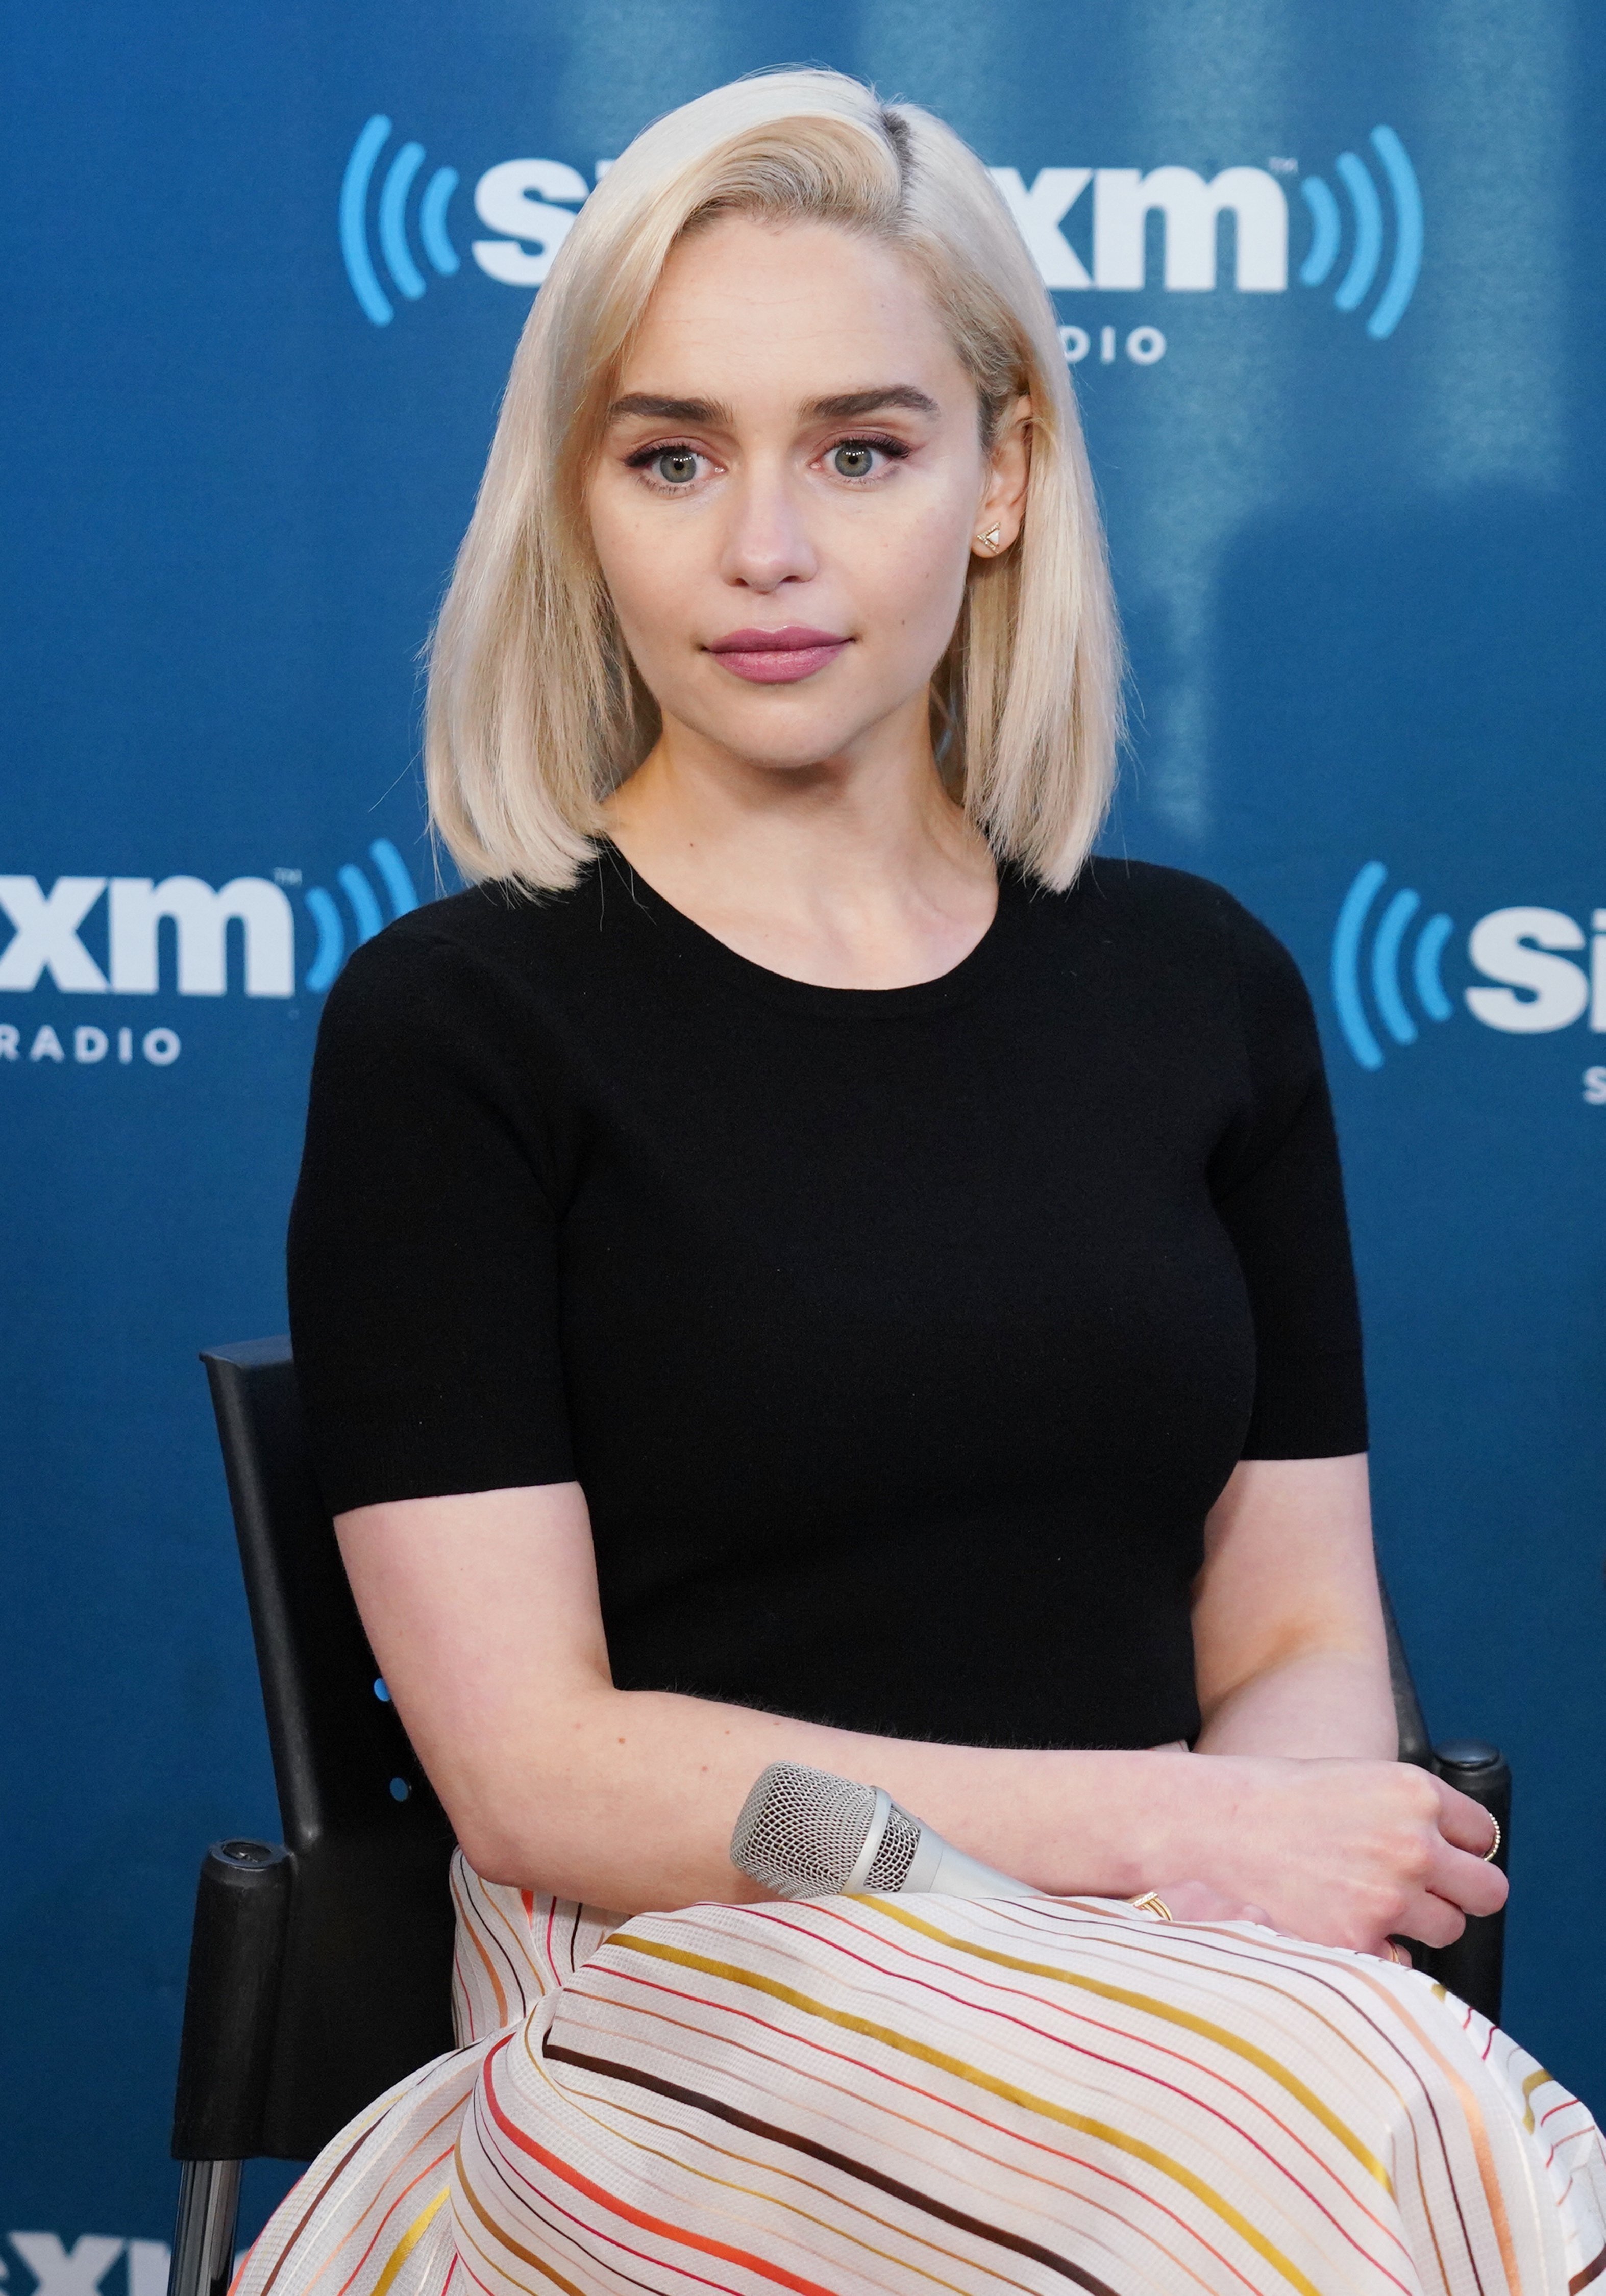 Emilia Clarke participe à l'hôtel de ville de SiriusXM le 21 mai 2018 à New York. | Source: Getty Images.